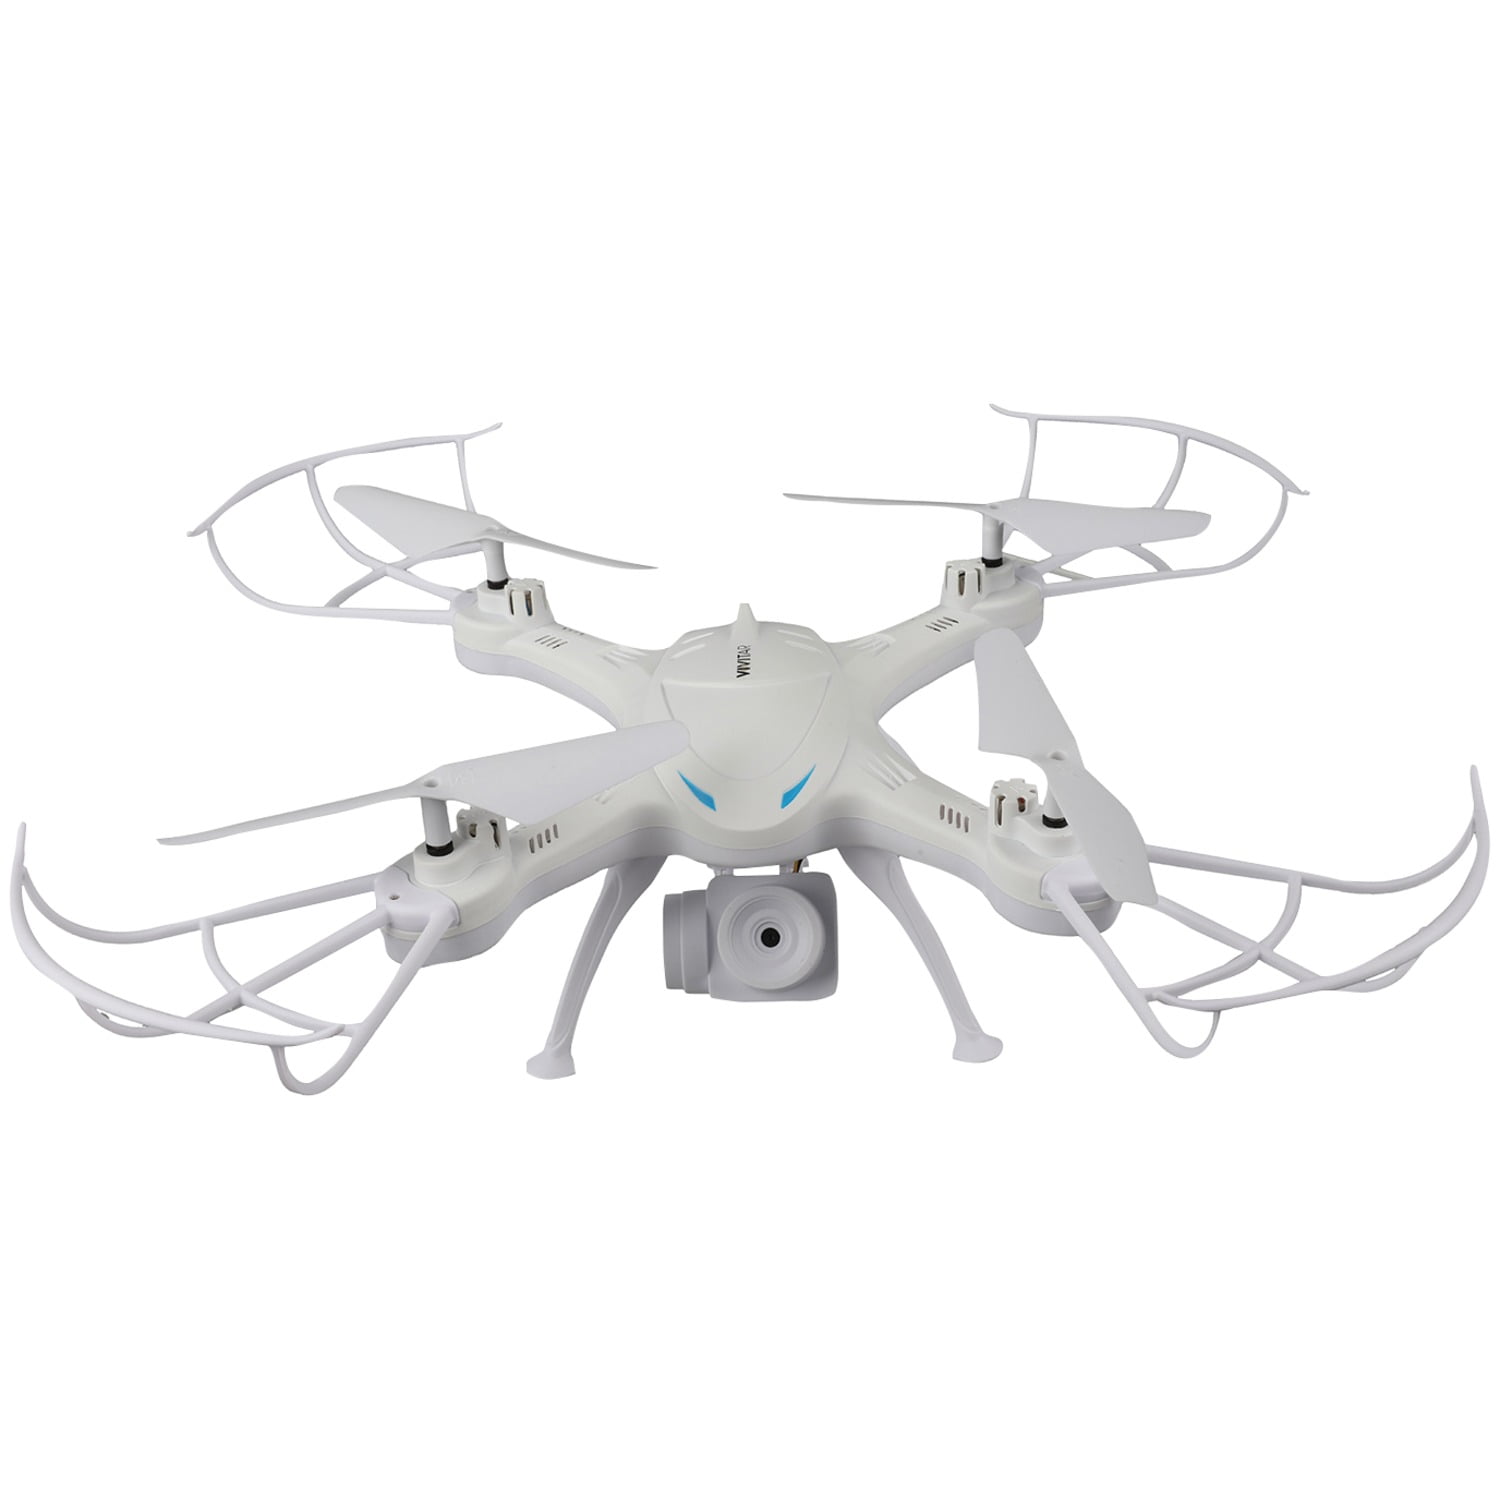 Vivitar Aeroview Quadcopter Video Drone App Control Through WiFi 